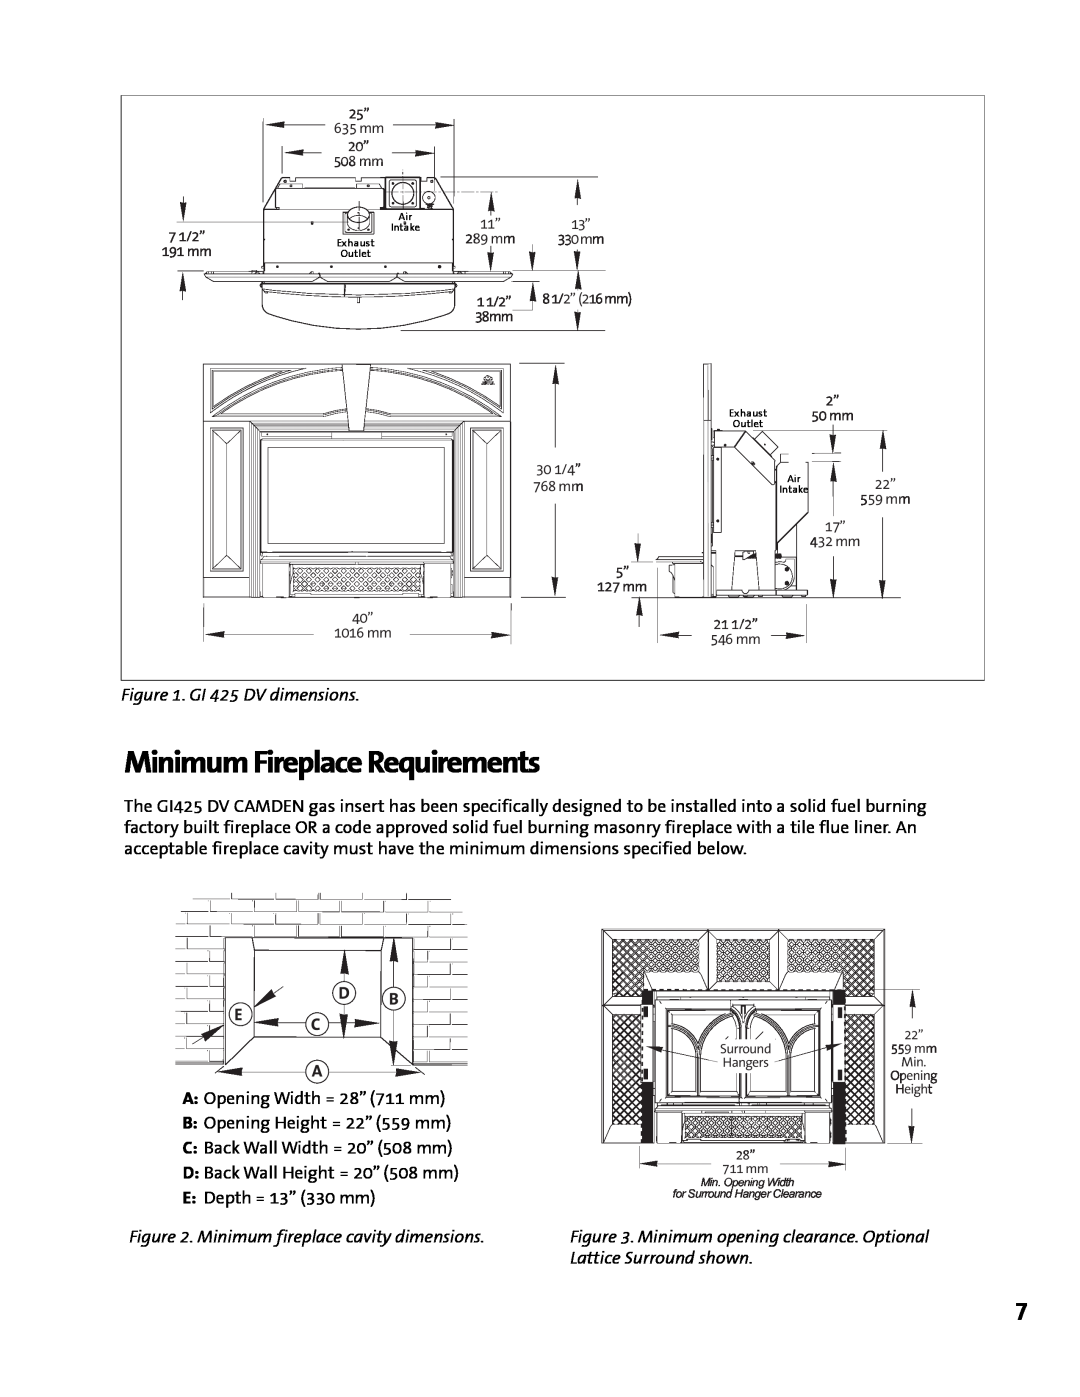 Jotul manual Minimum Fireplace Requirements, GI 425 DV dimensions, Minimum fireplace cavity dimensions 